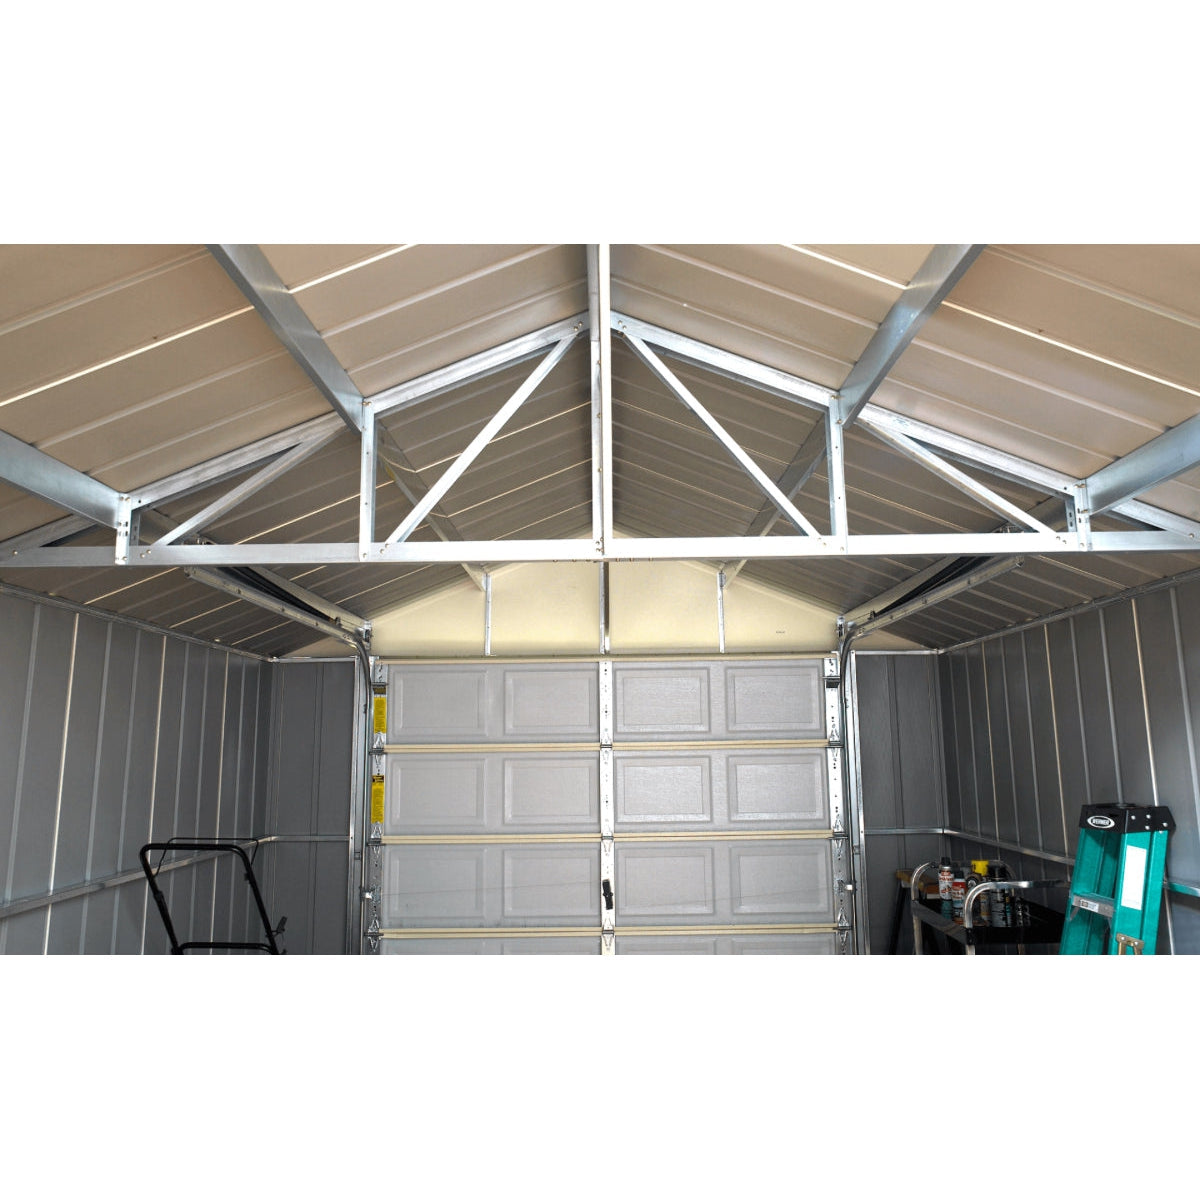 Arrow Murryhill Steel Garage Shed 14 x 31 ft.-Delightful Yard